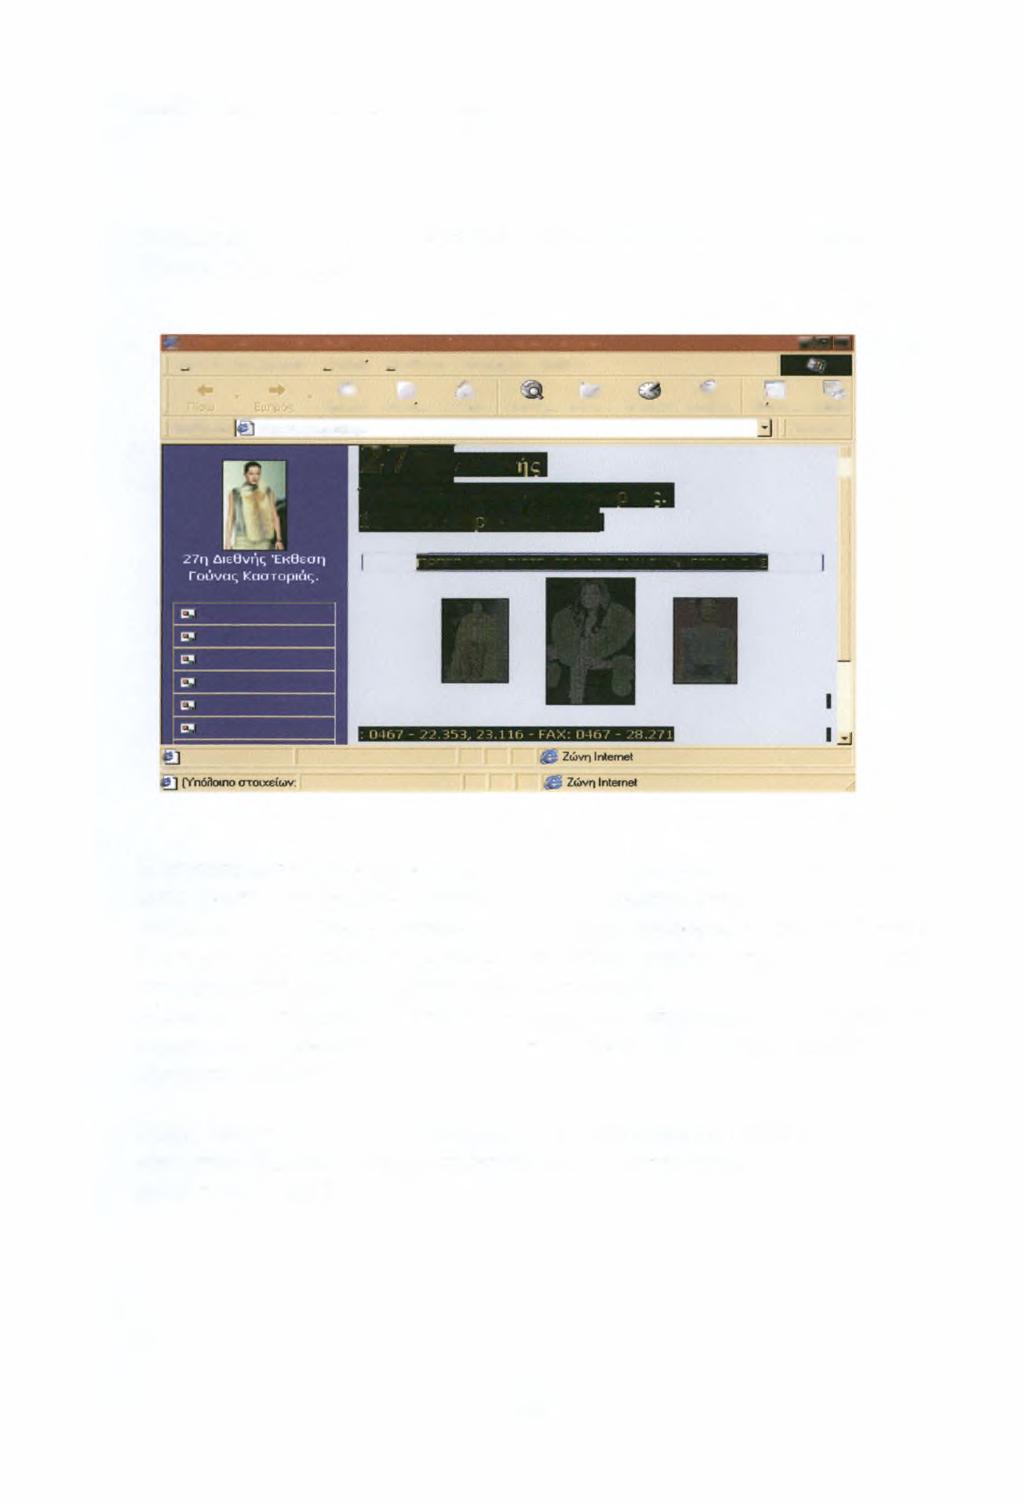 ΔΉΜΗΤΡΑ ΣΑΜΑΡΑ Ε MARKETING on FUR 2000-01 38 Ενδεικτικά δίνεται η ηλεκτροκική παρουσία του Συνδέσμου Γουνοποιιών Καστοριάς στο Διαδίκτυο.